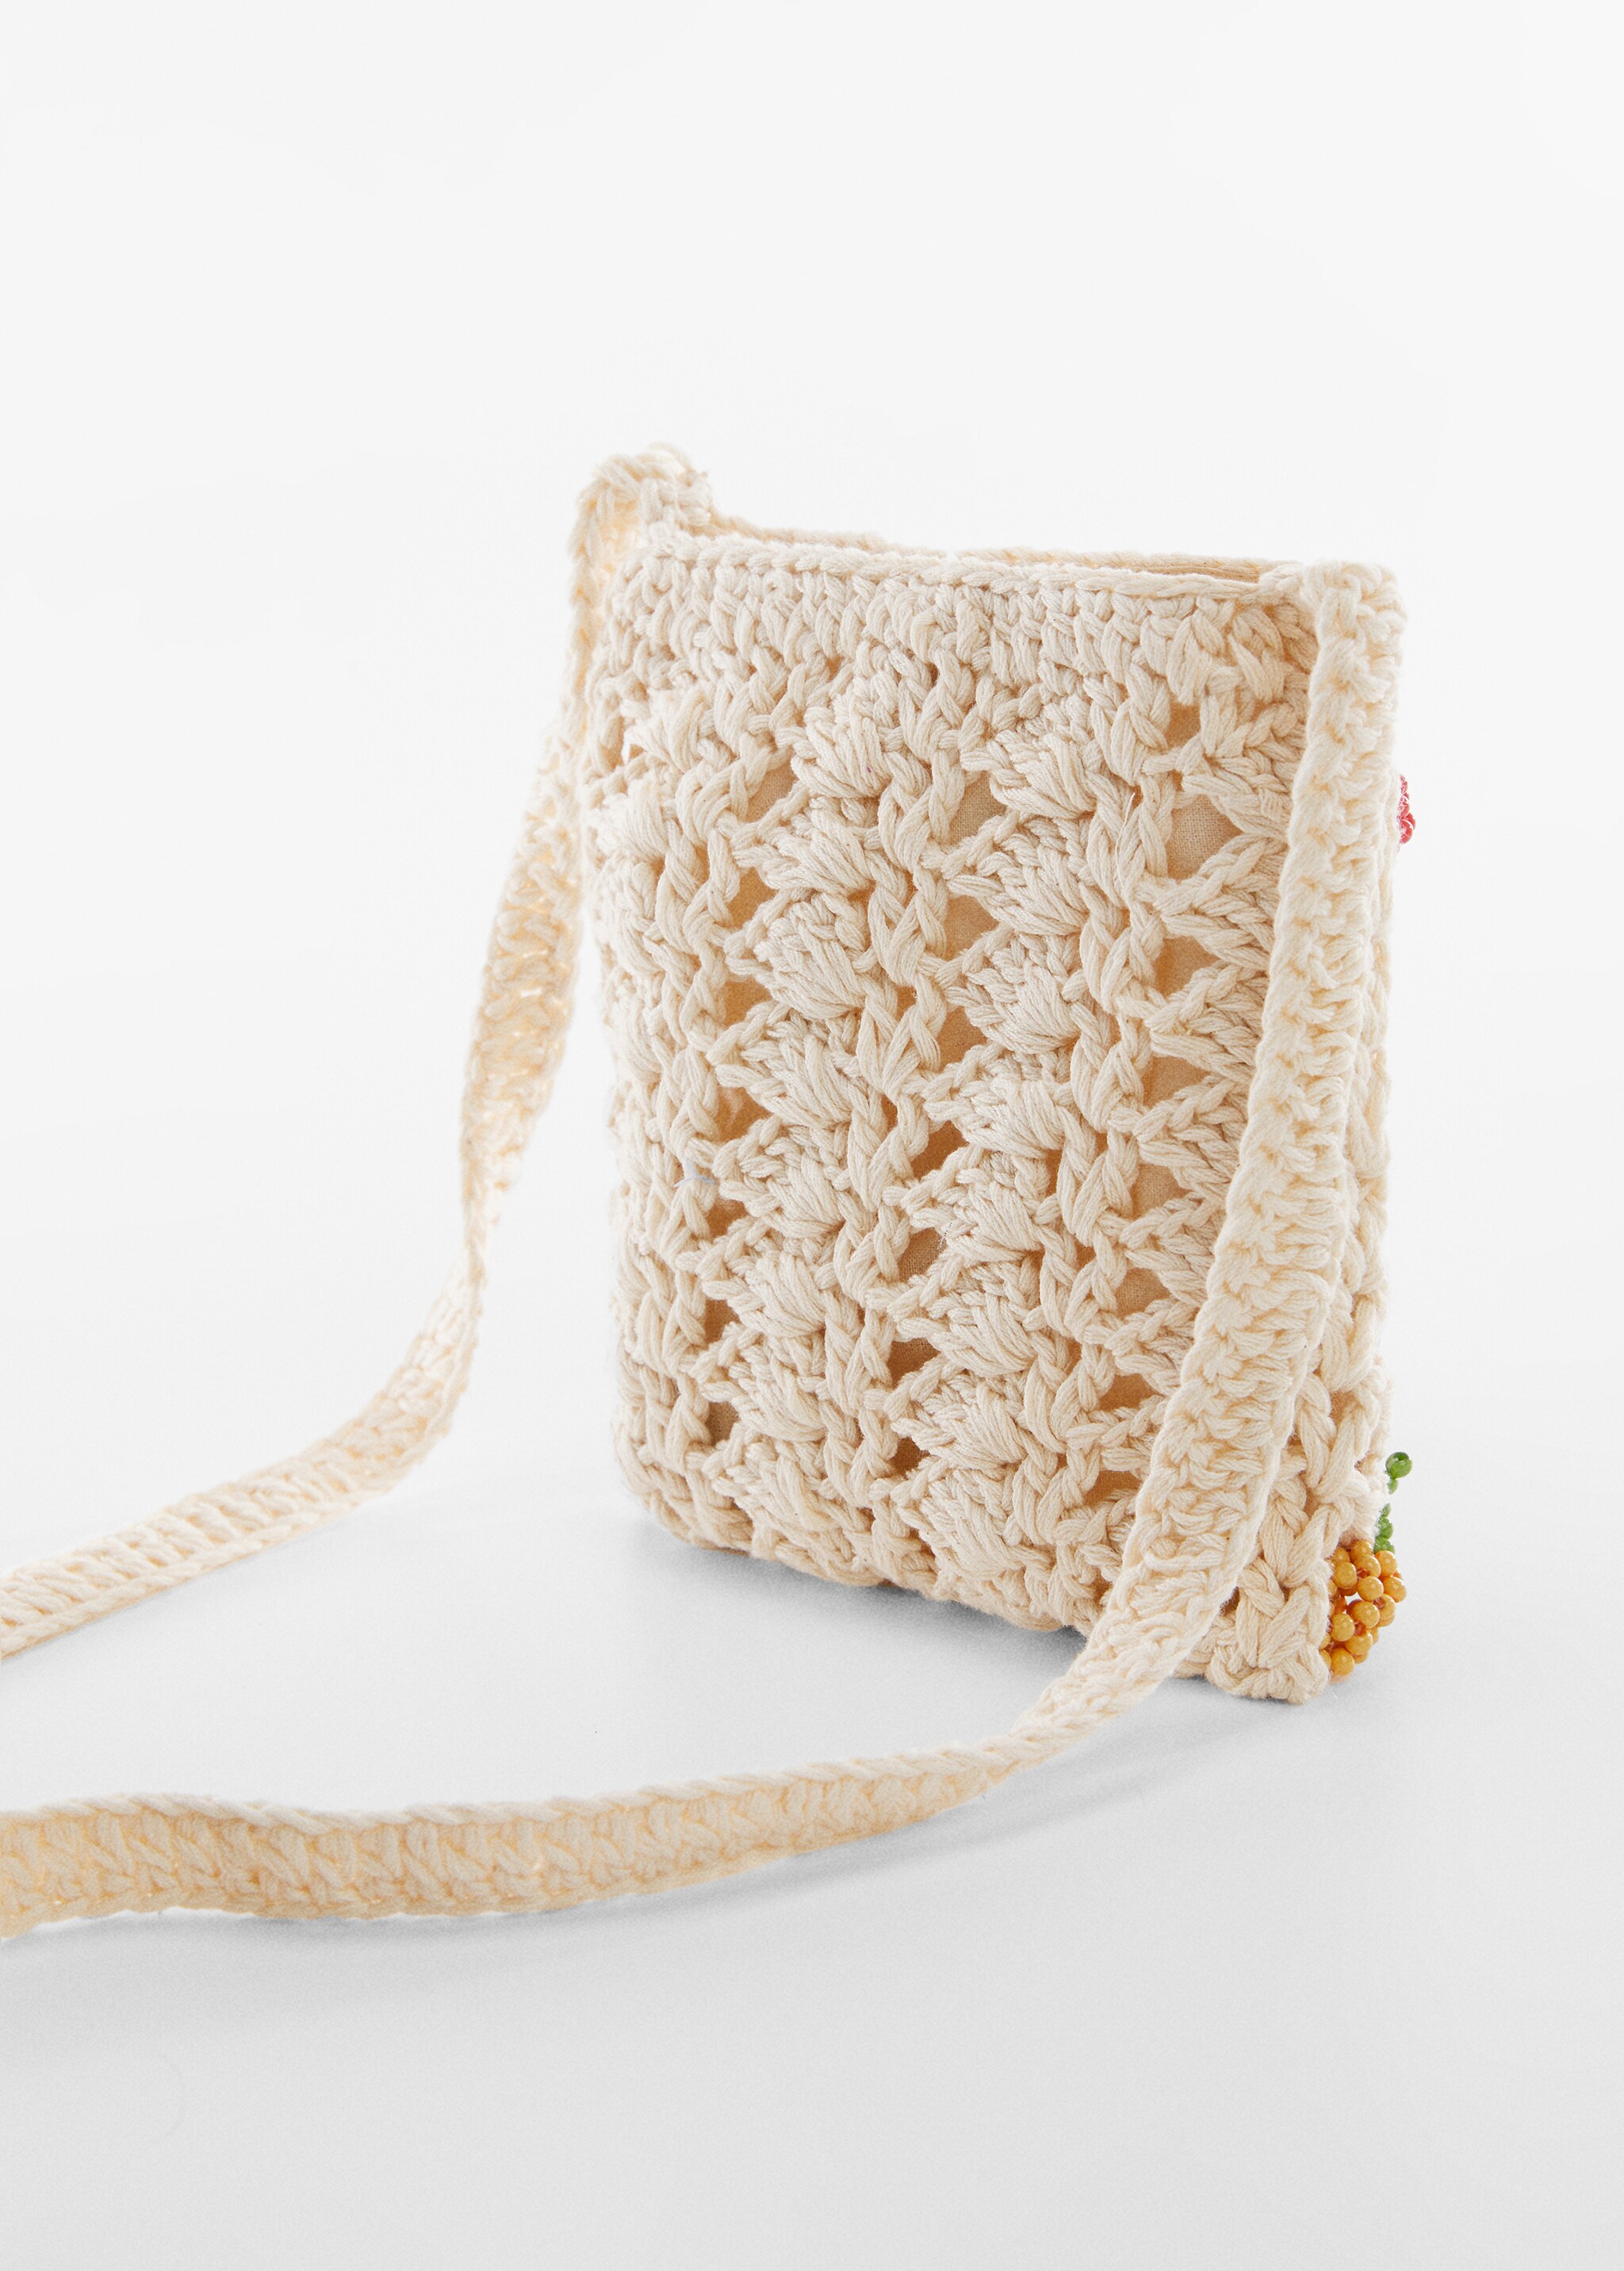 Mini sac crochet - Plan moyen